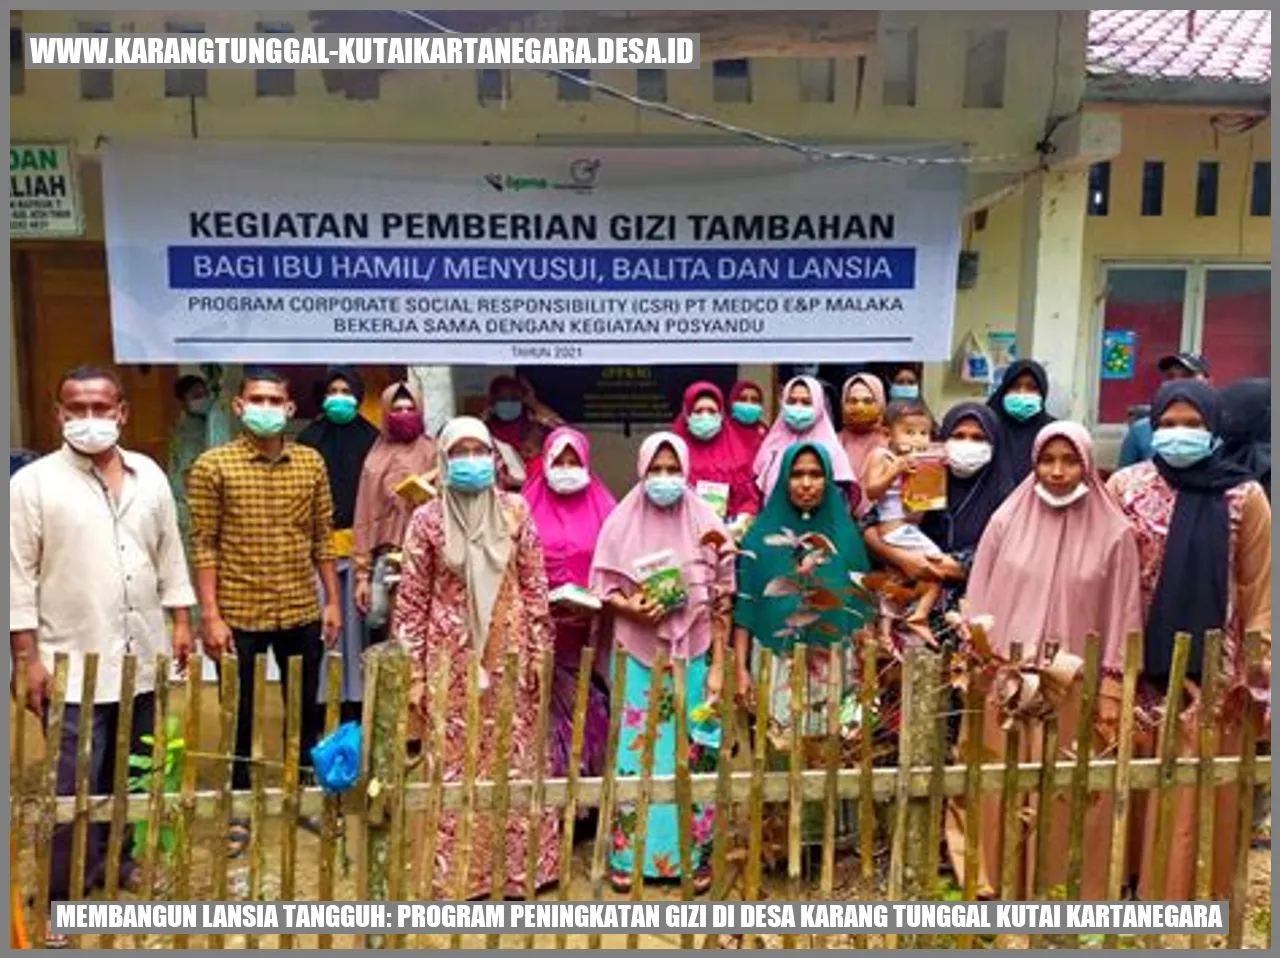 Membangun Lansia Tangguh: Program Peningkatan Gizi di Desa Karang Tunggal Kutai Kartanegara